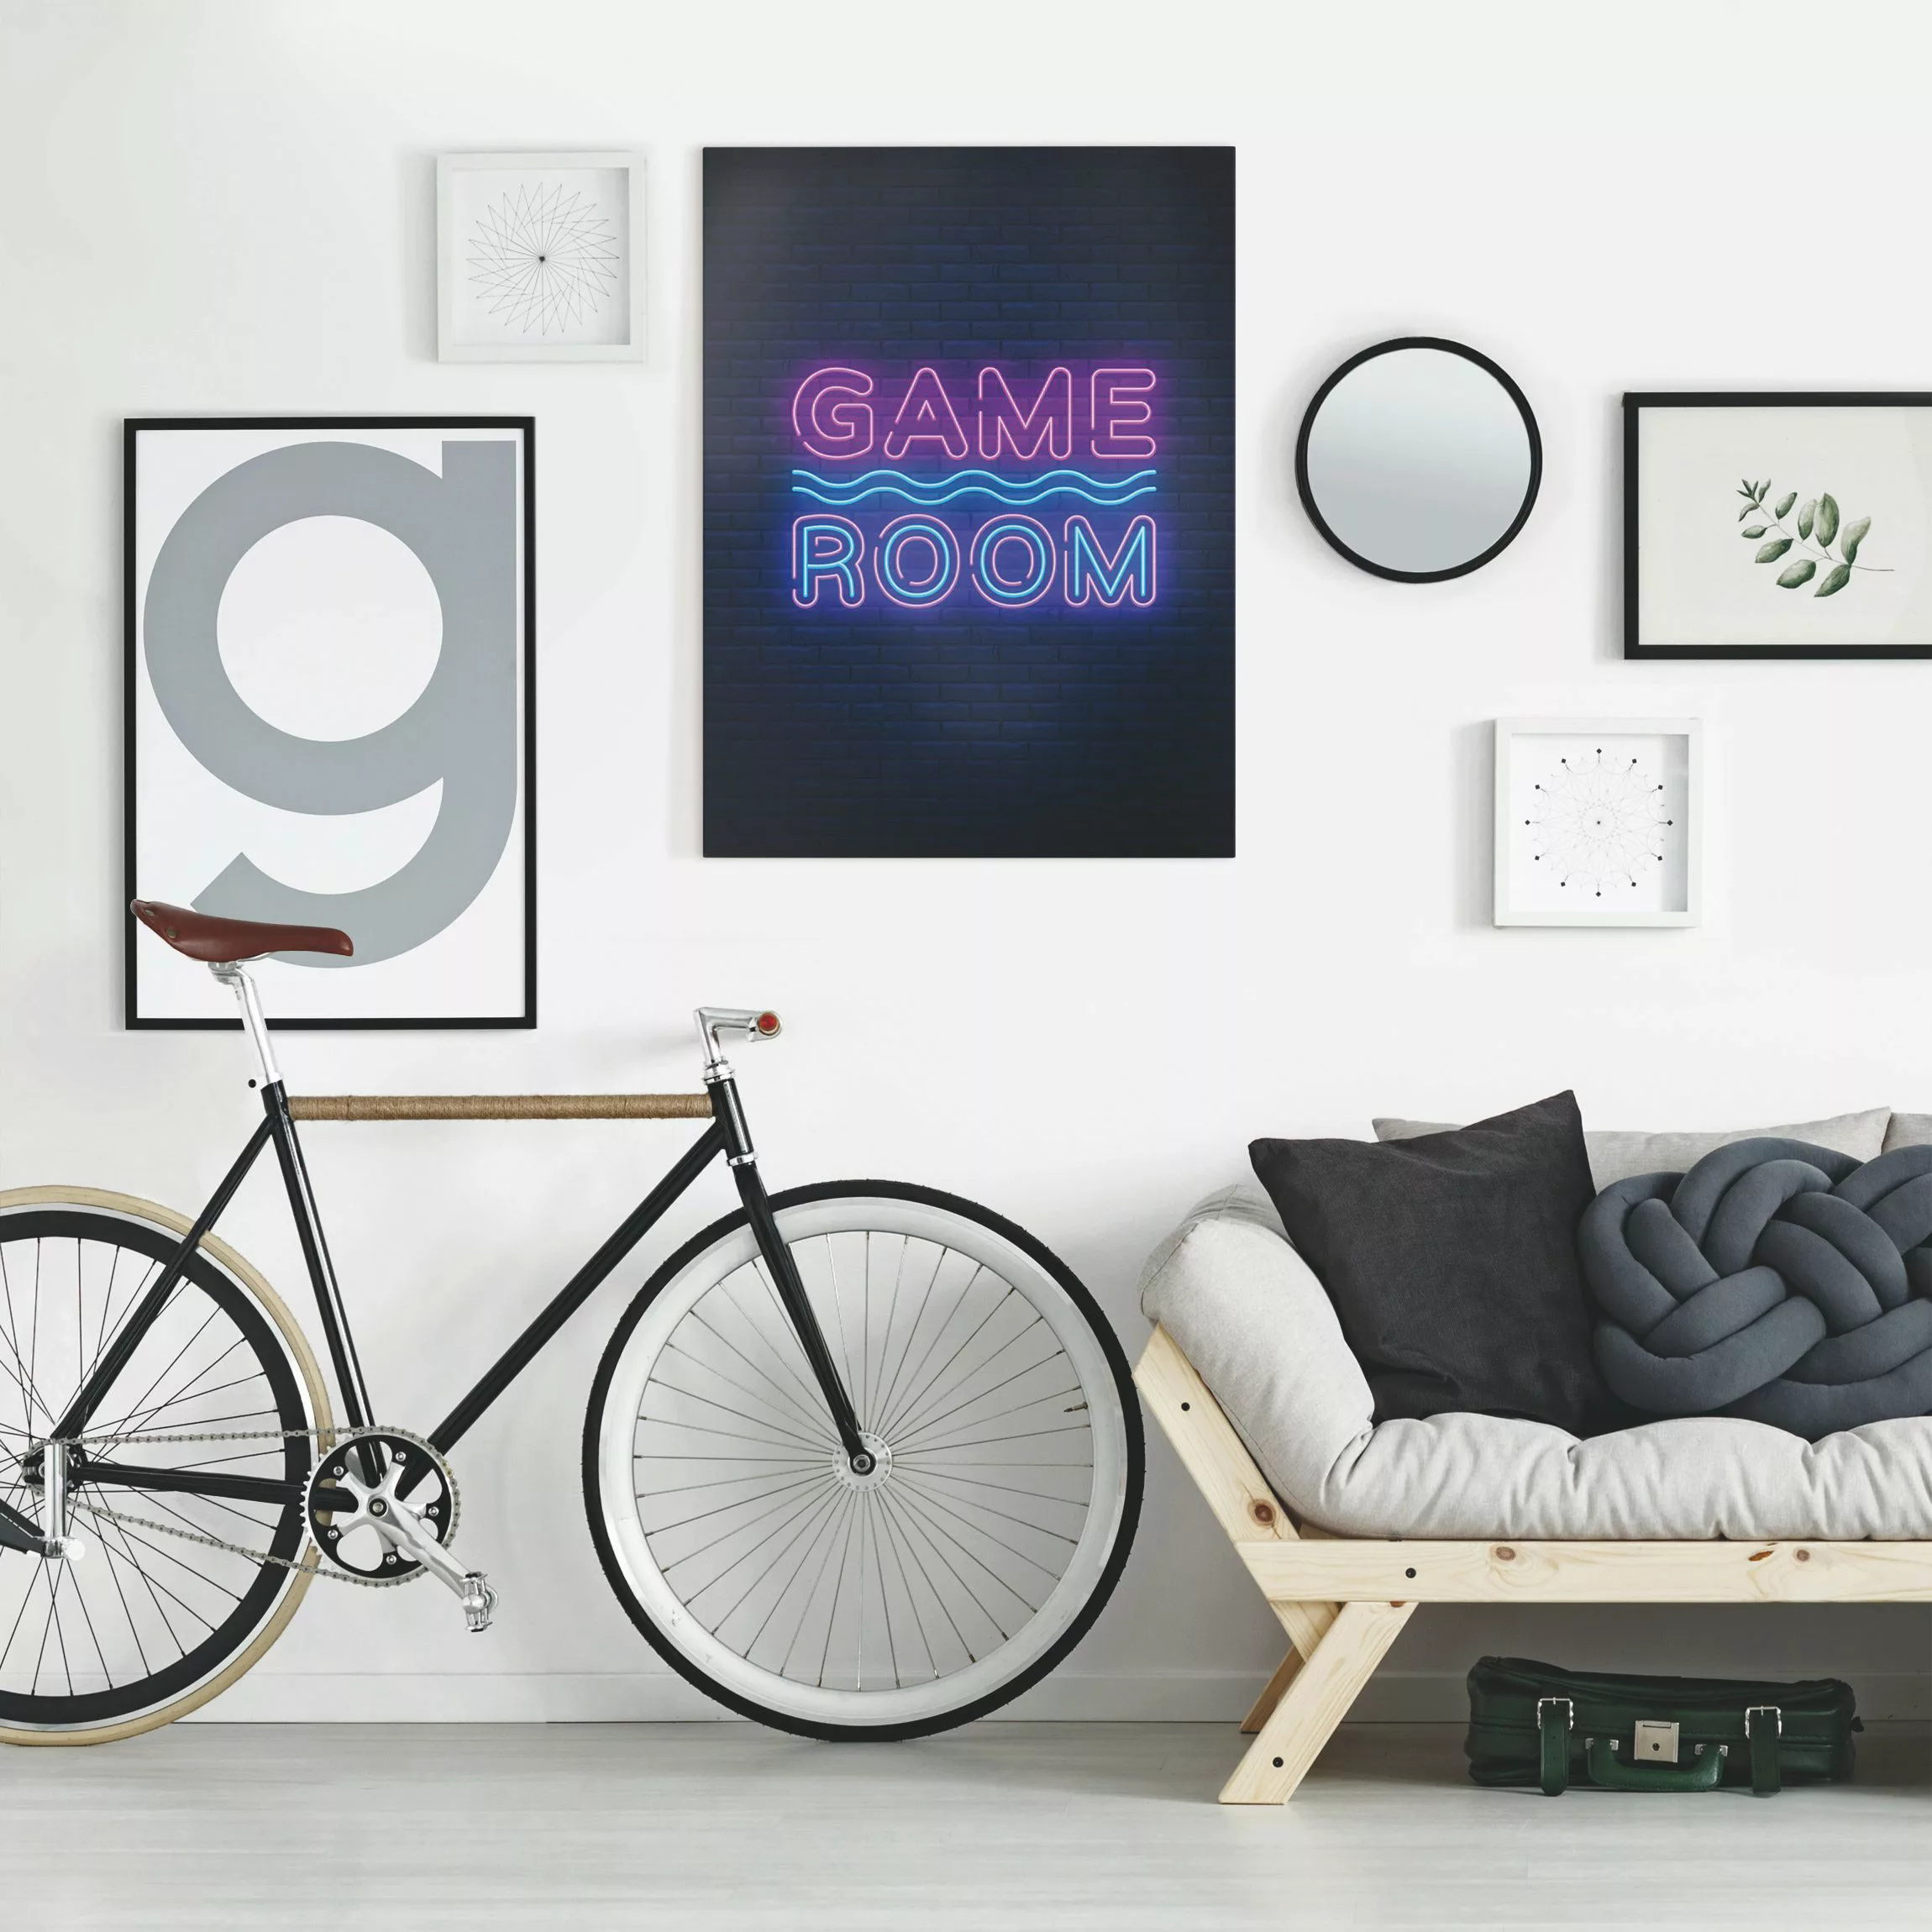 Leinwandbild Neon Schrift Game Room günstig online kaufen